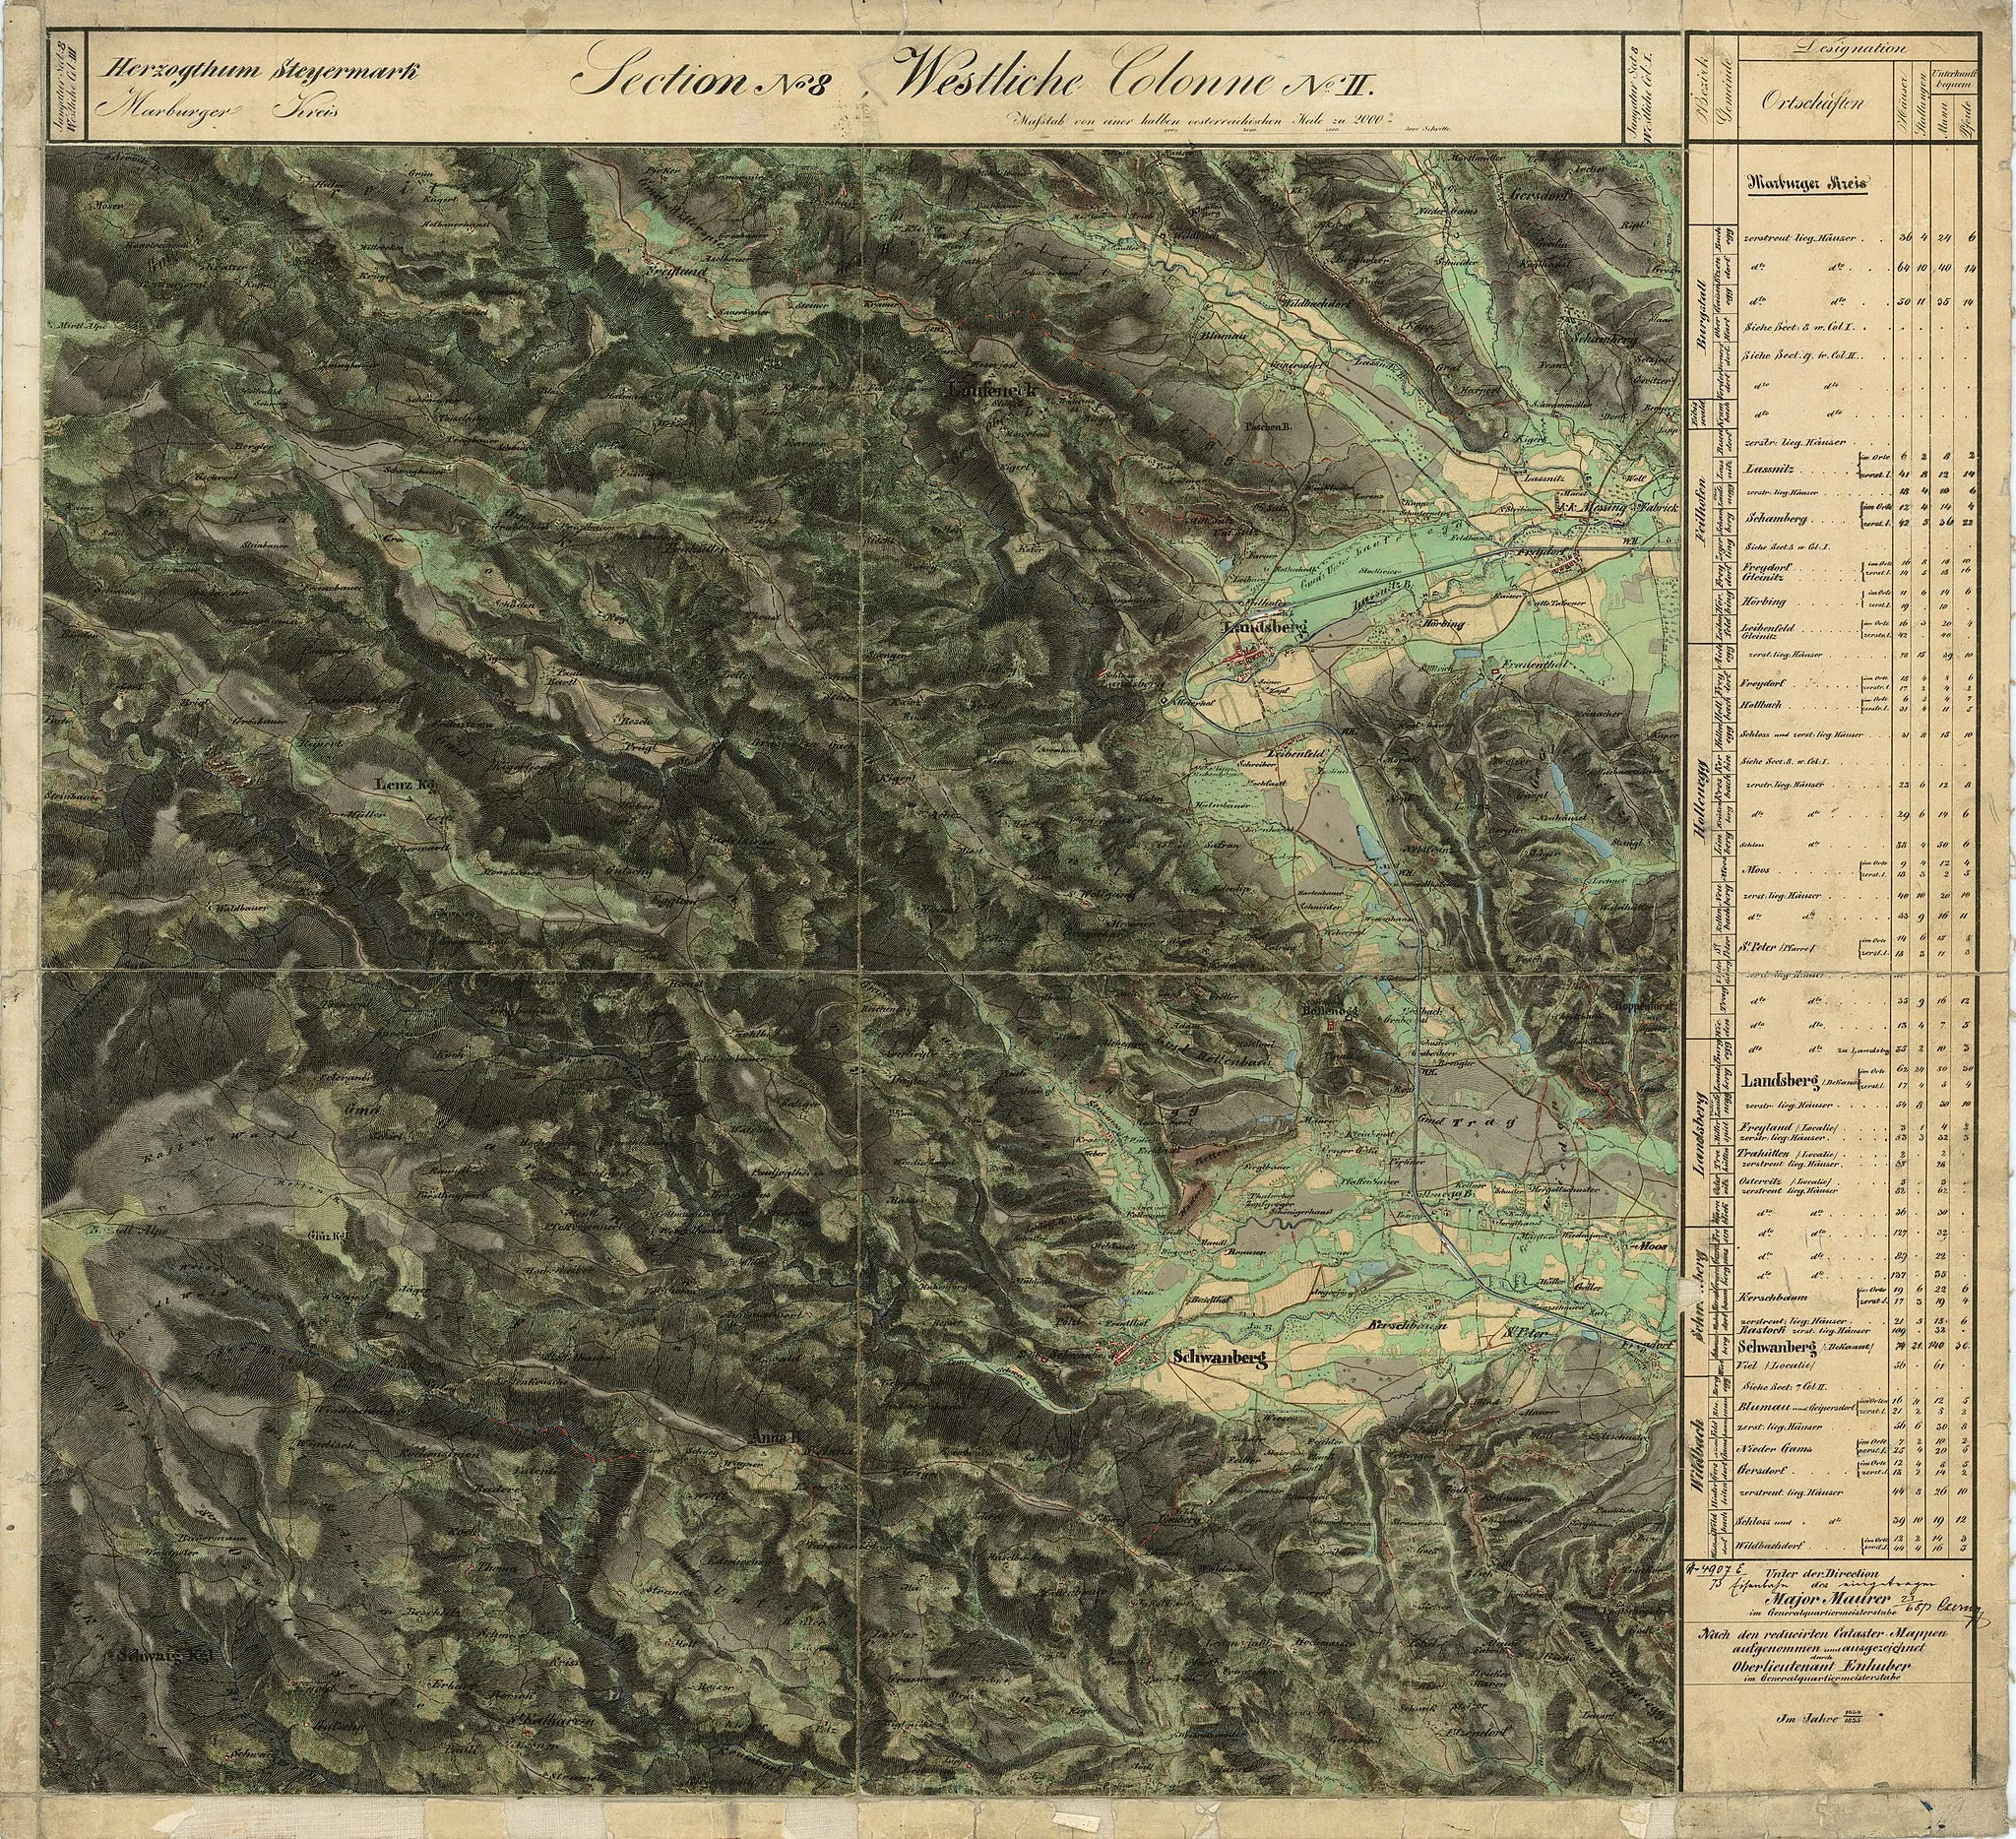 Photo showing: historische Landkarte, Franziszeische Landesaufnahme, Blatt sectio 08 westliche columne II Weststeiermark, Koralmgebiet, Landsberg bis Osterwitz